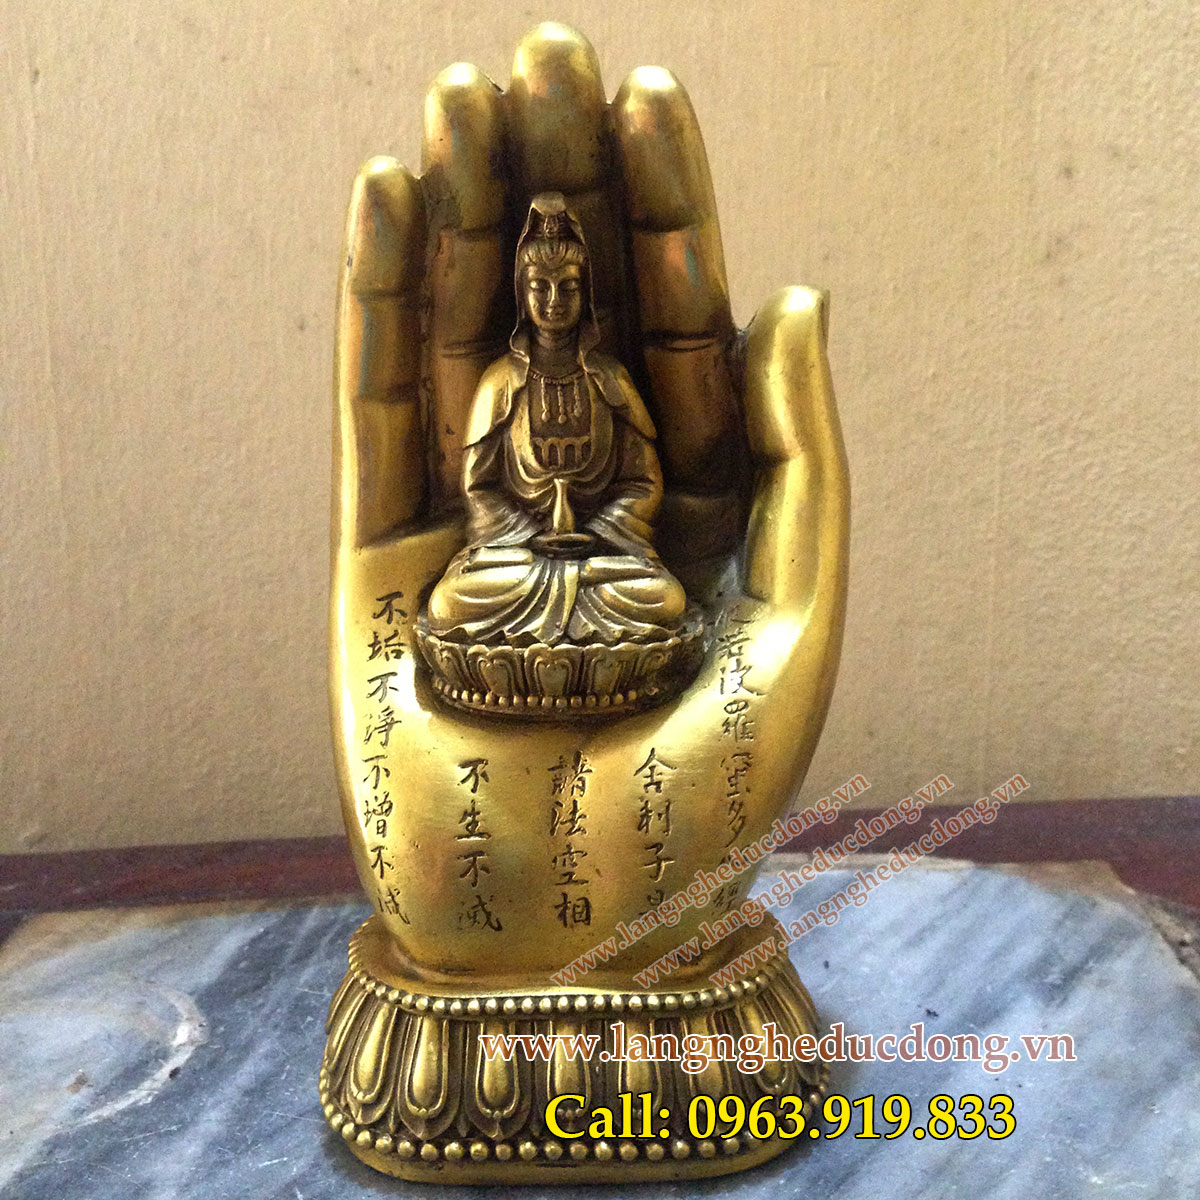 langngheducdong.vn - Bàn tay Phật Quan Âm Bồ Tát, bàn tay phật bằng đồng